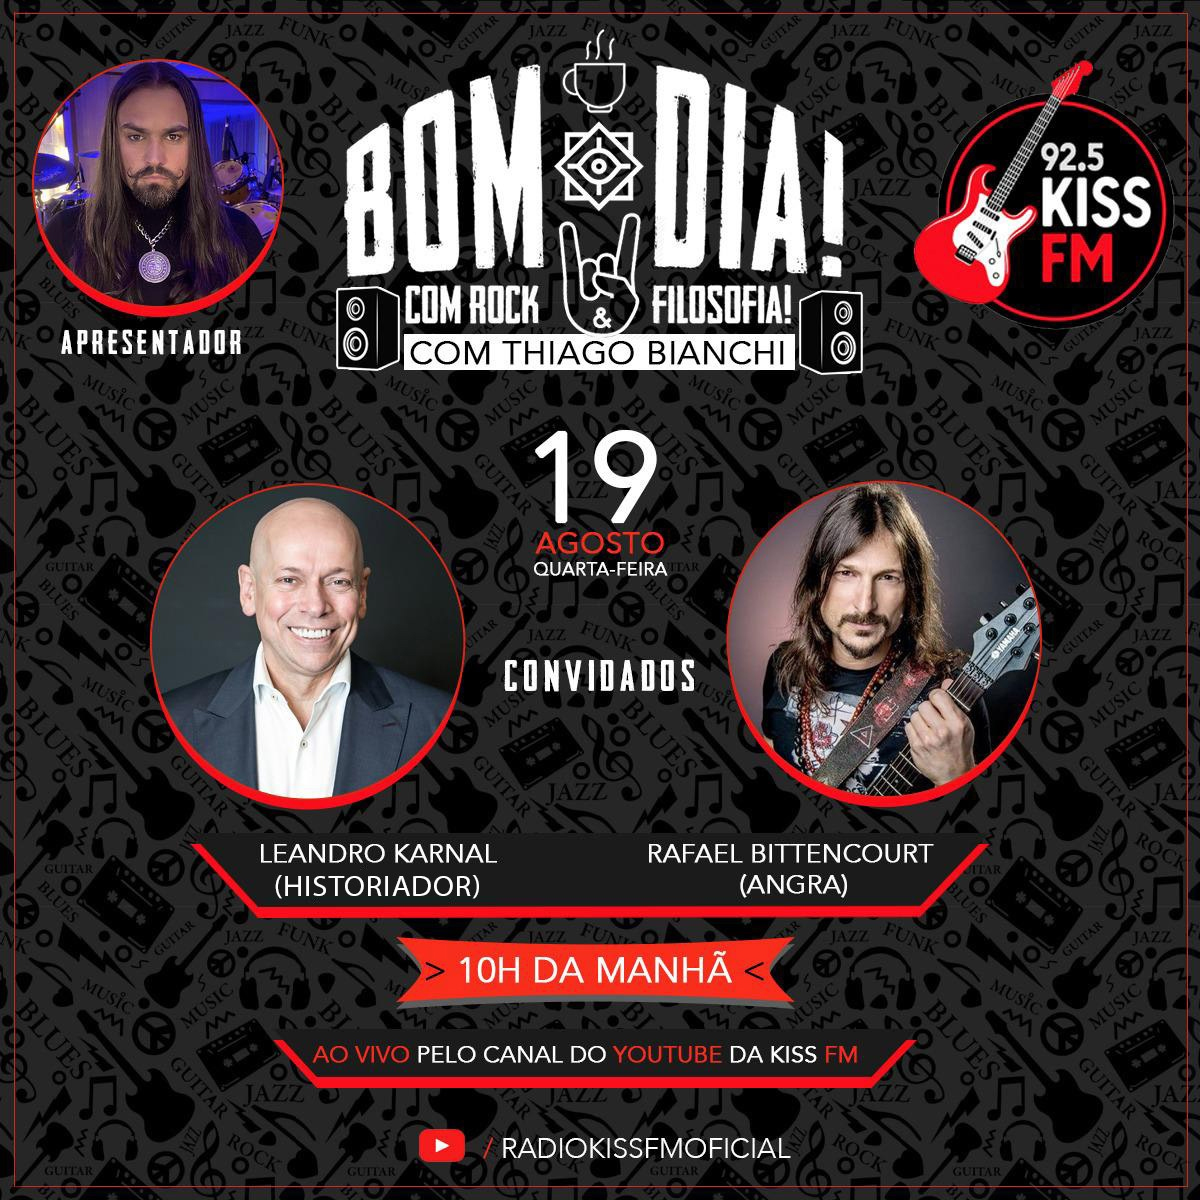 Kiss FM lança talk show “Bom dia! Com Rock e Filosofia!” com Thiago Bianchi  como apresentador no YouTube da rádio || TRM Press || Assessoria de  imprensa/Consultoria Artística, Musical e Cultural